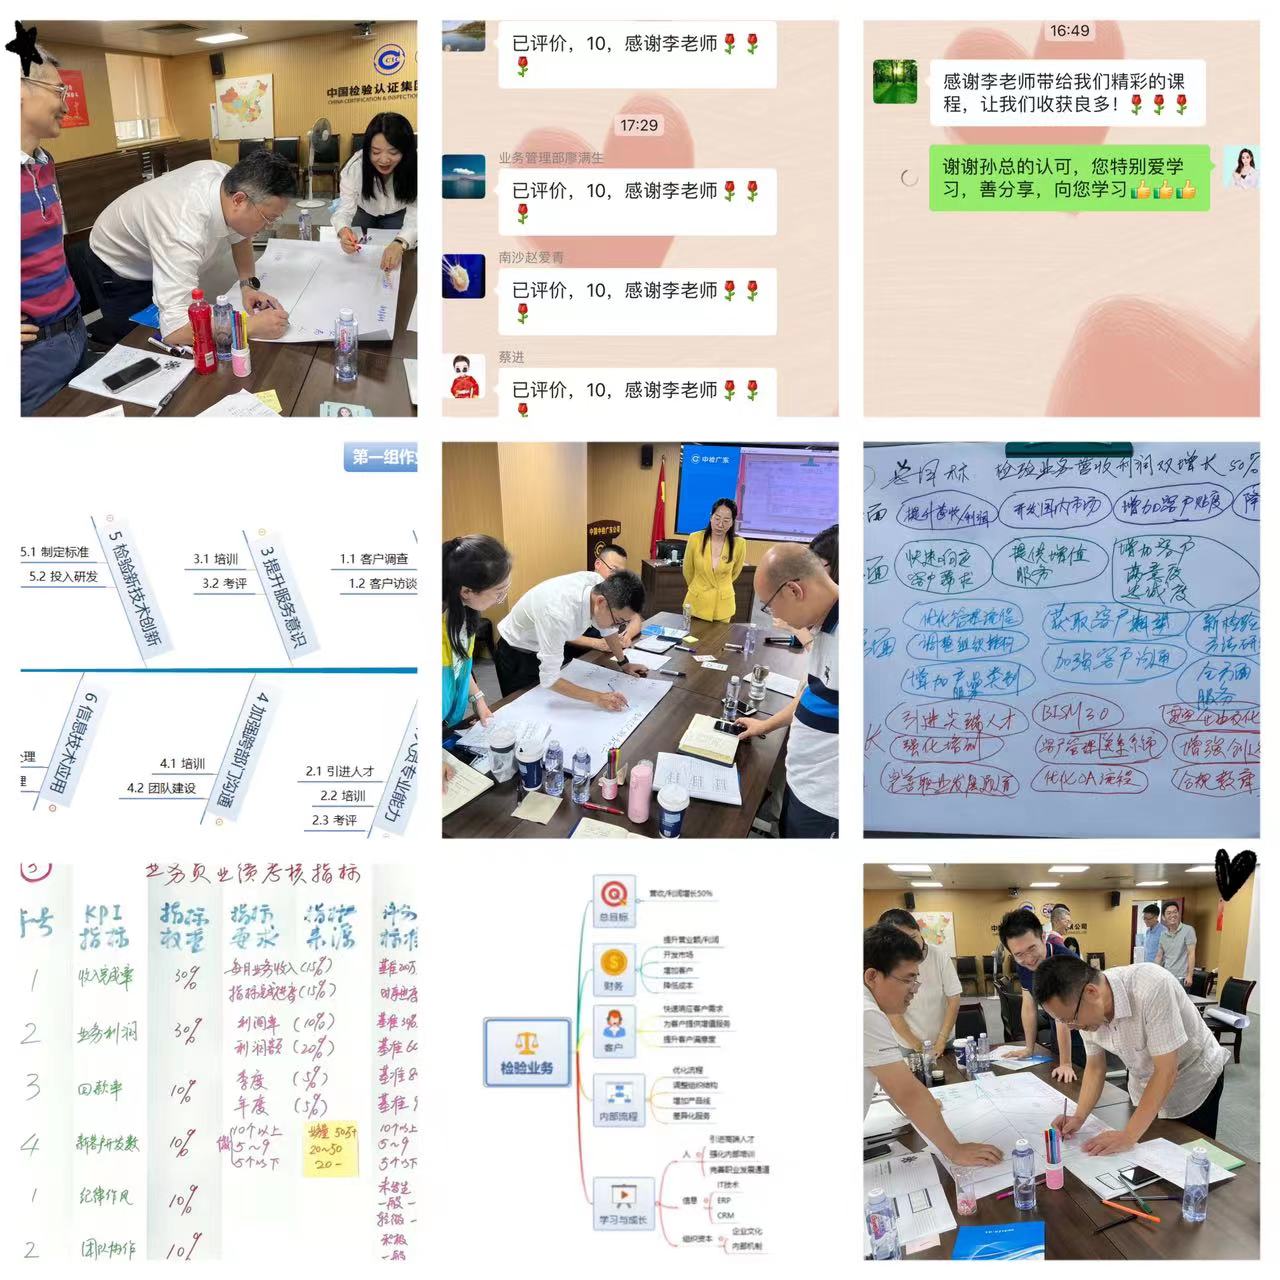 【李彩玉老师】5月31日在成都讲授《OKR目标与关键结果工作法》公开课